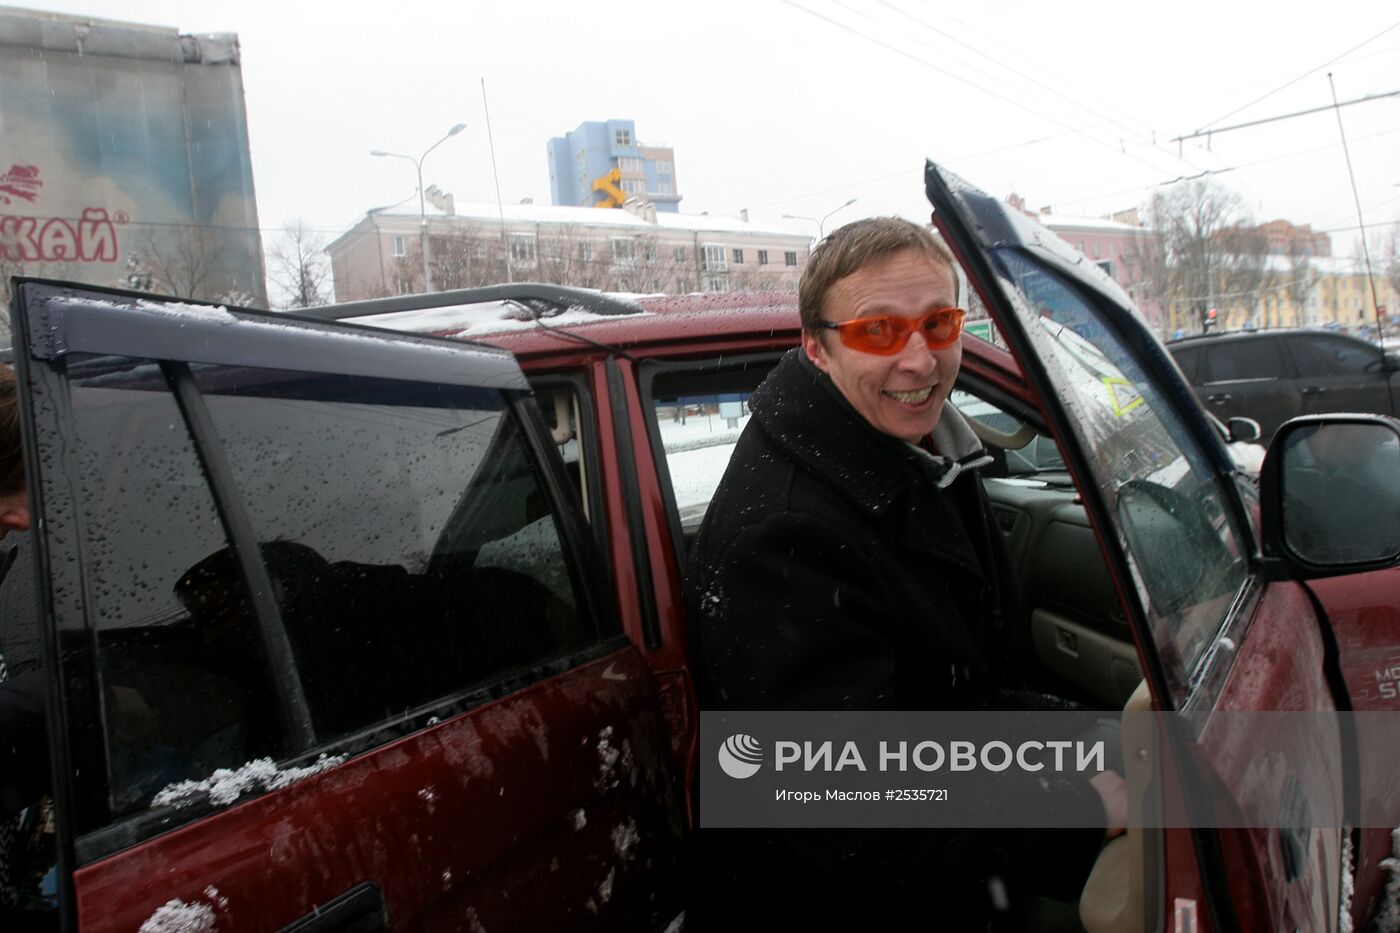 Российский актер Иван Охлобыстин приехал в Донецк на премьеру нового фильма "Иерей-сан